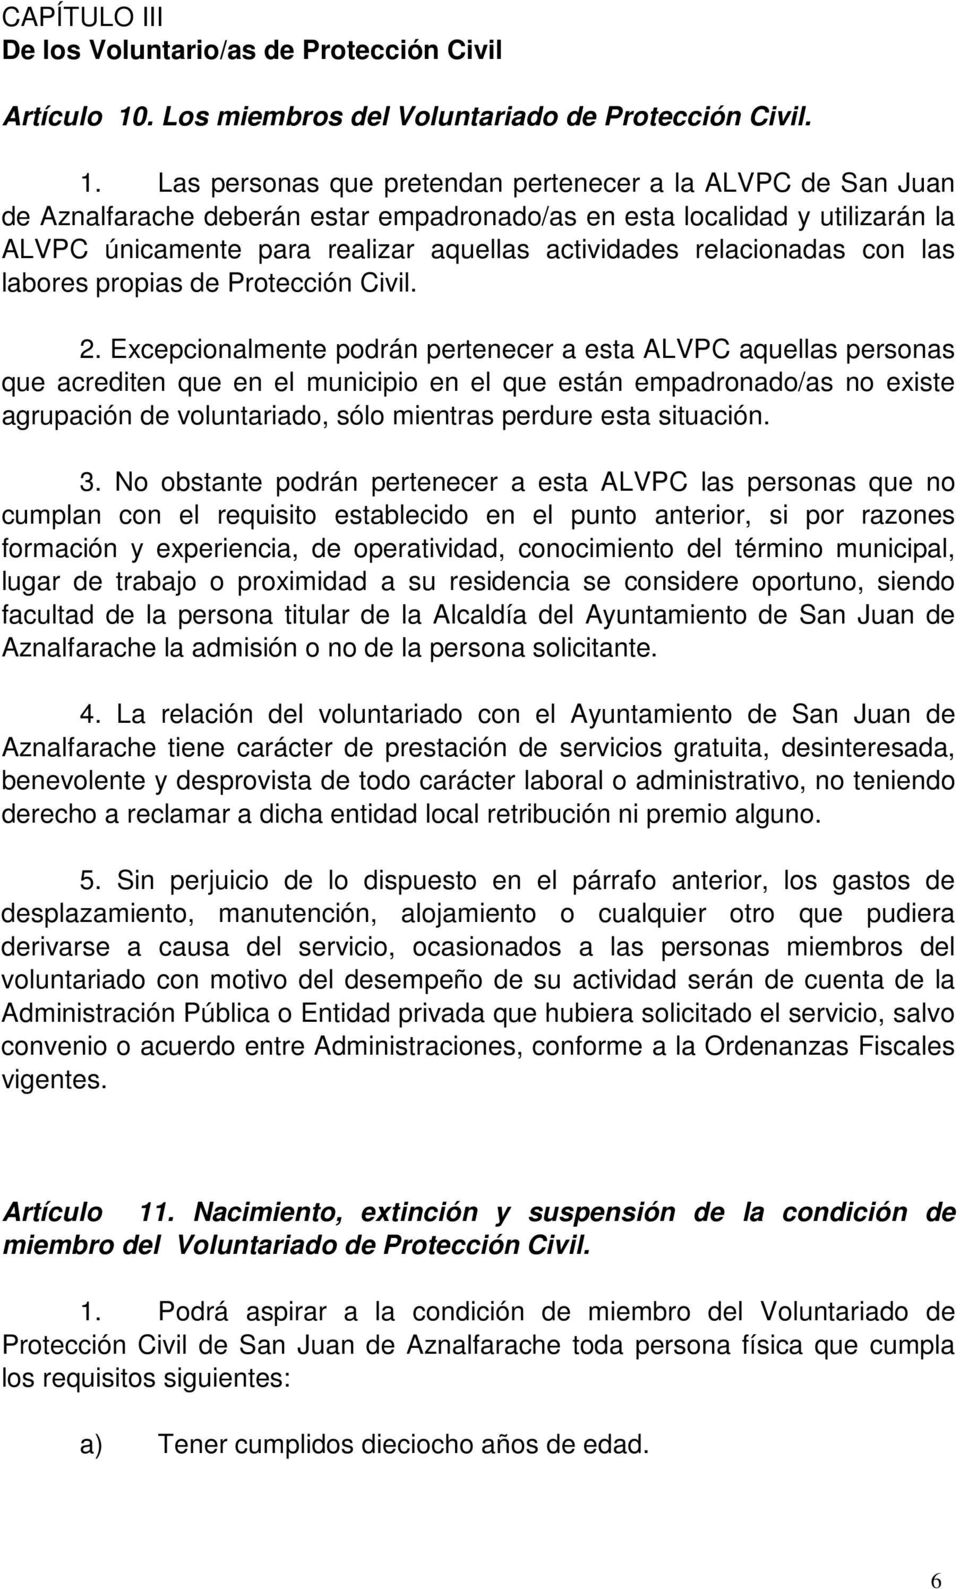 Las personas que pretendan pertenecer a la ALVPC de San Juan de Aznalfarache deberán estar empadronado/as en esta localidad y utilizarán la ALVPC únicamente para realizar aquellas actividades